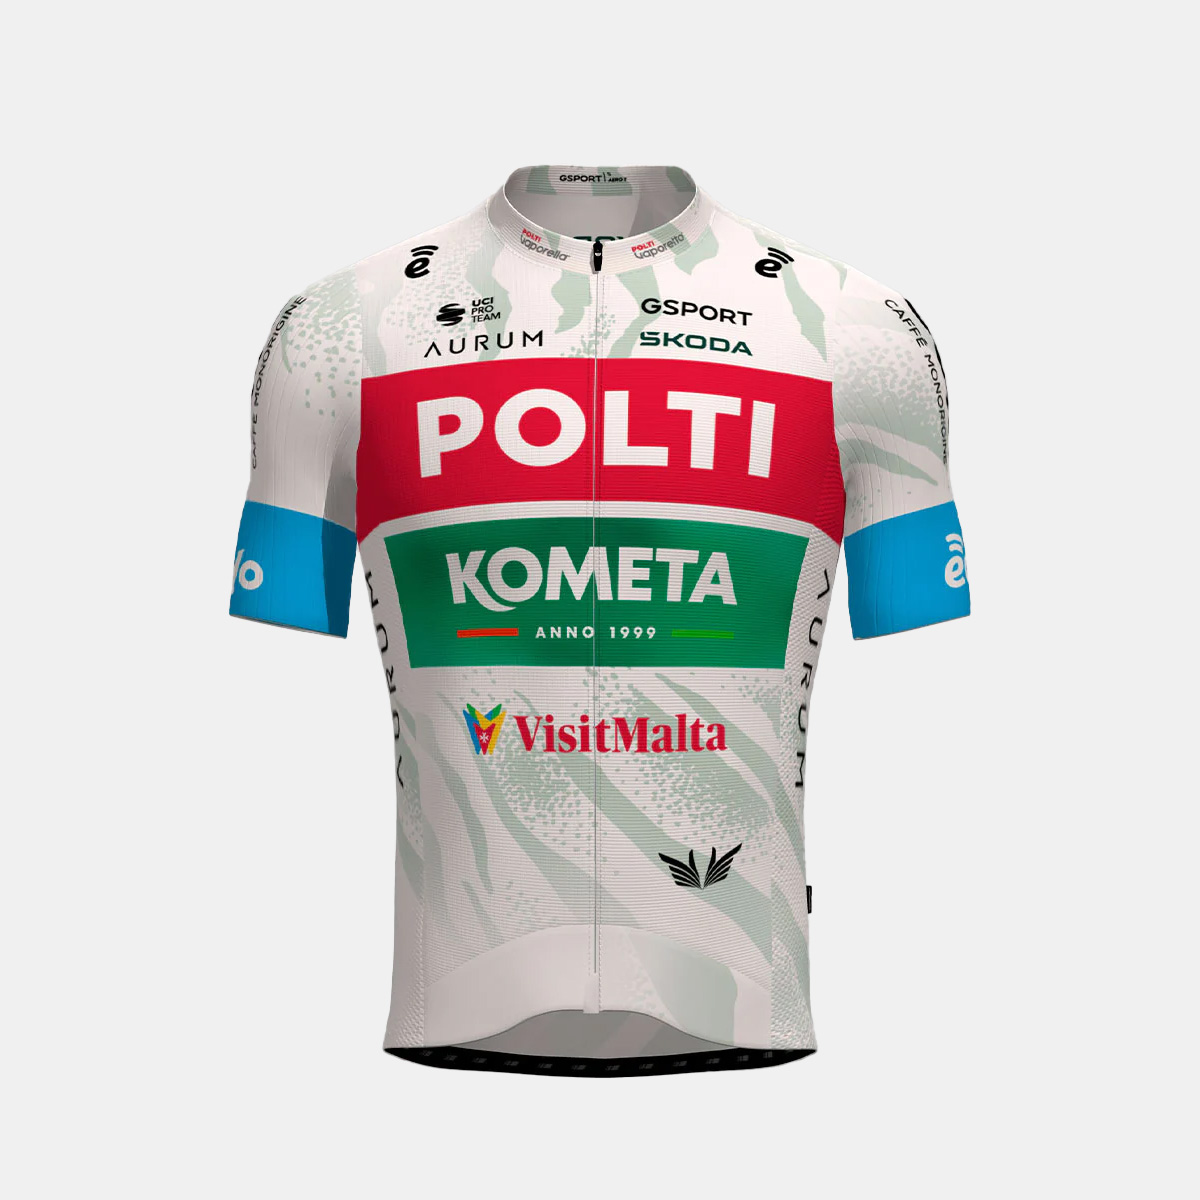 Maglia ufficiale Team Polti Kometa